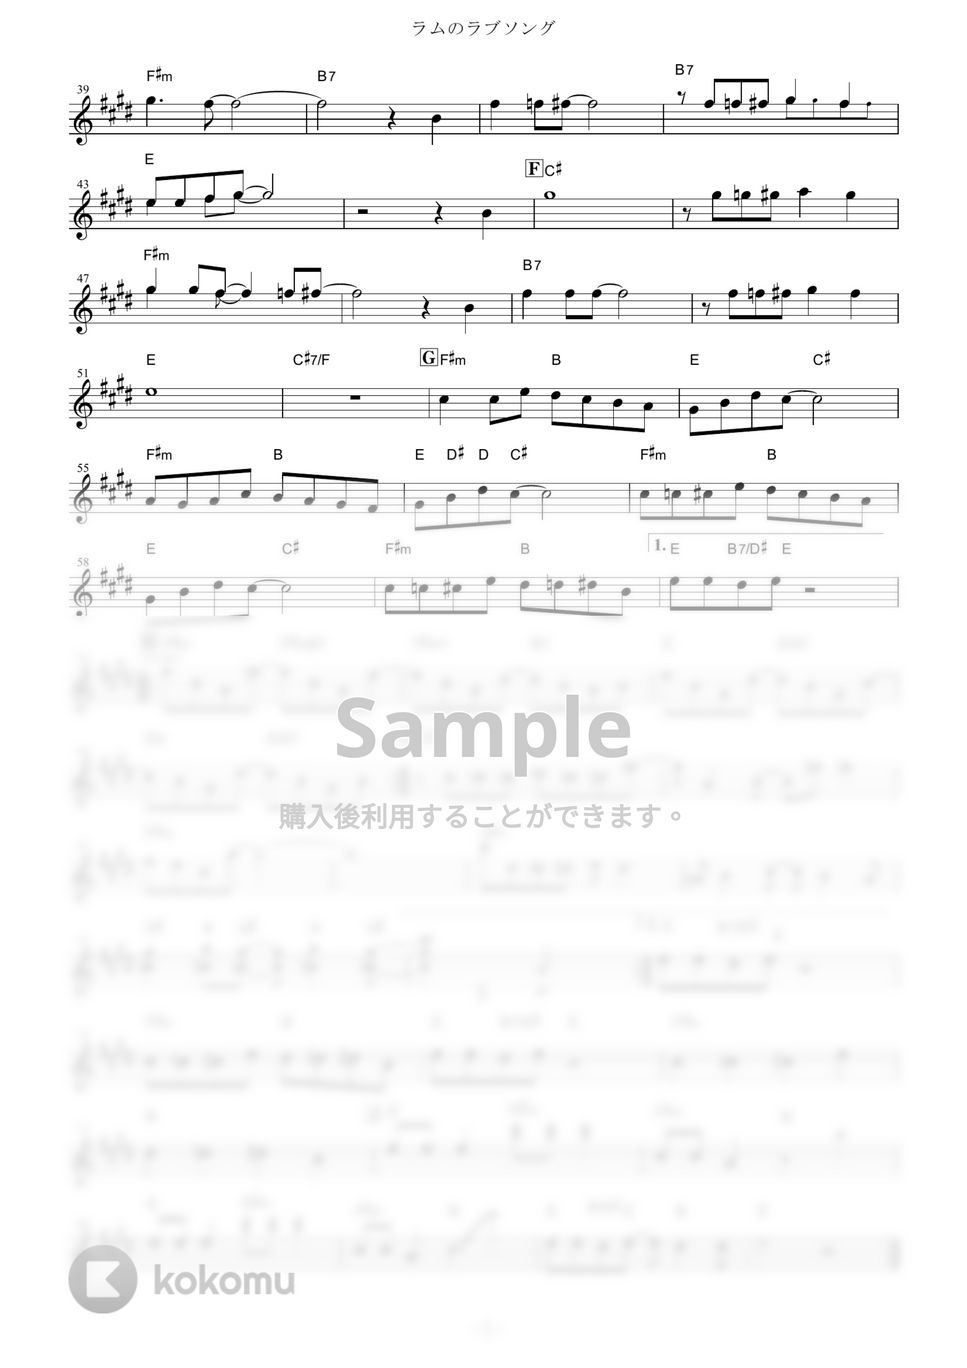 松谷祐子 - ラムのラブソング (『うる星やつら』 / in Eb) by muta-sax